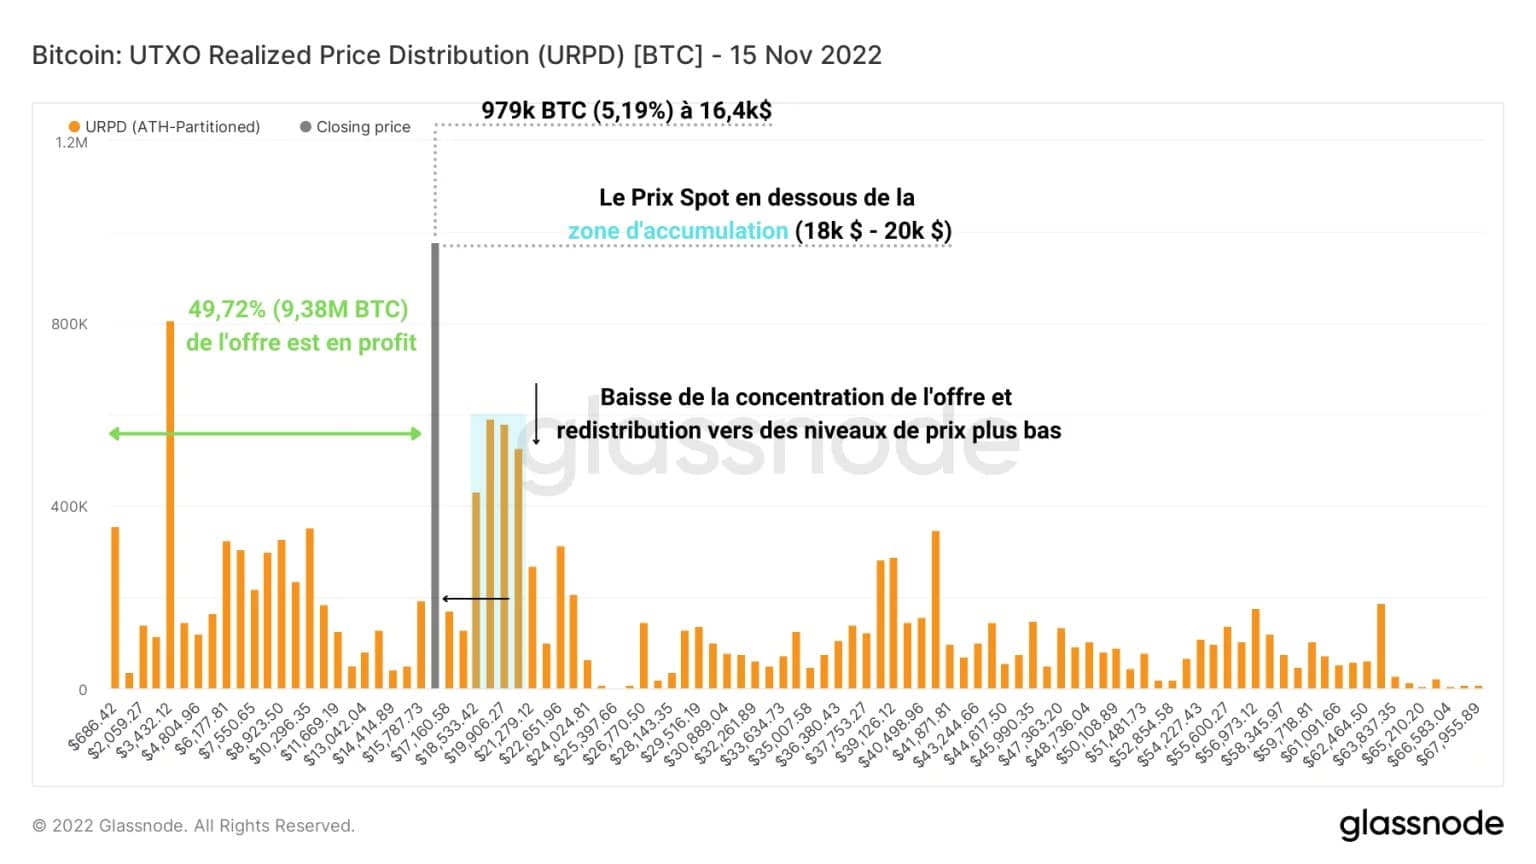 Rysunek 3: Rozkład ceny zrealizowanej UTXO (15 listopada 2022 r.)